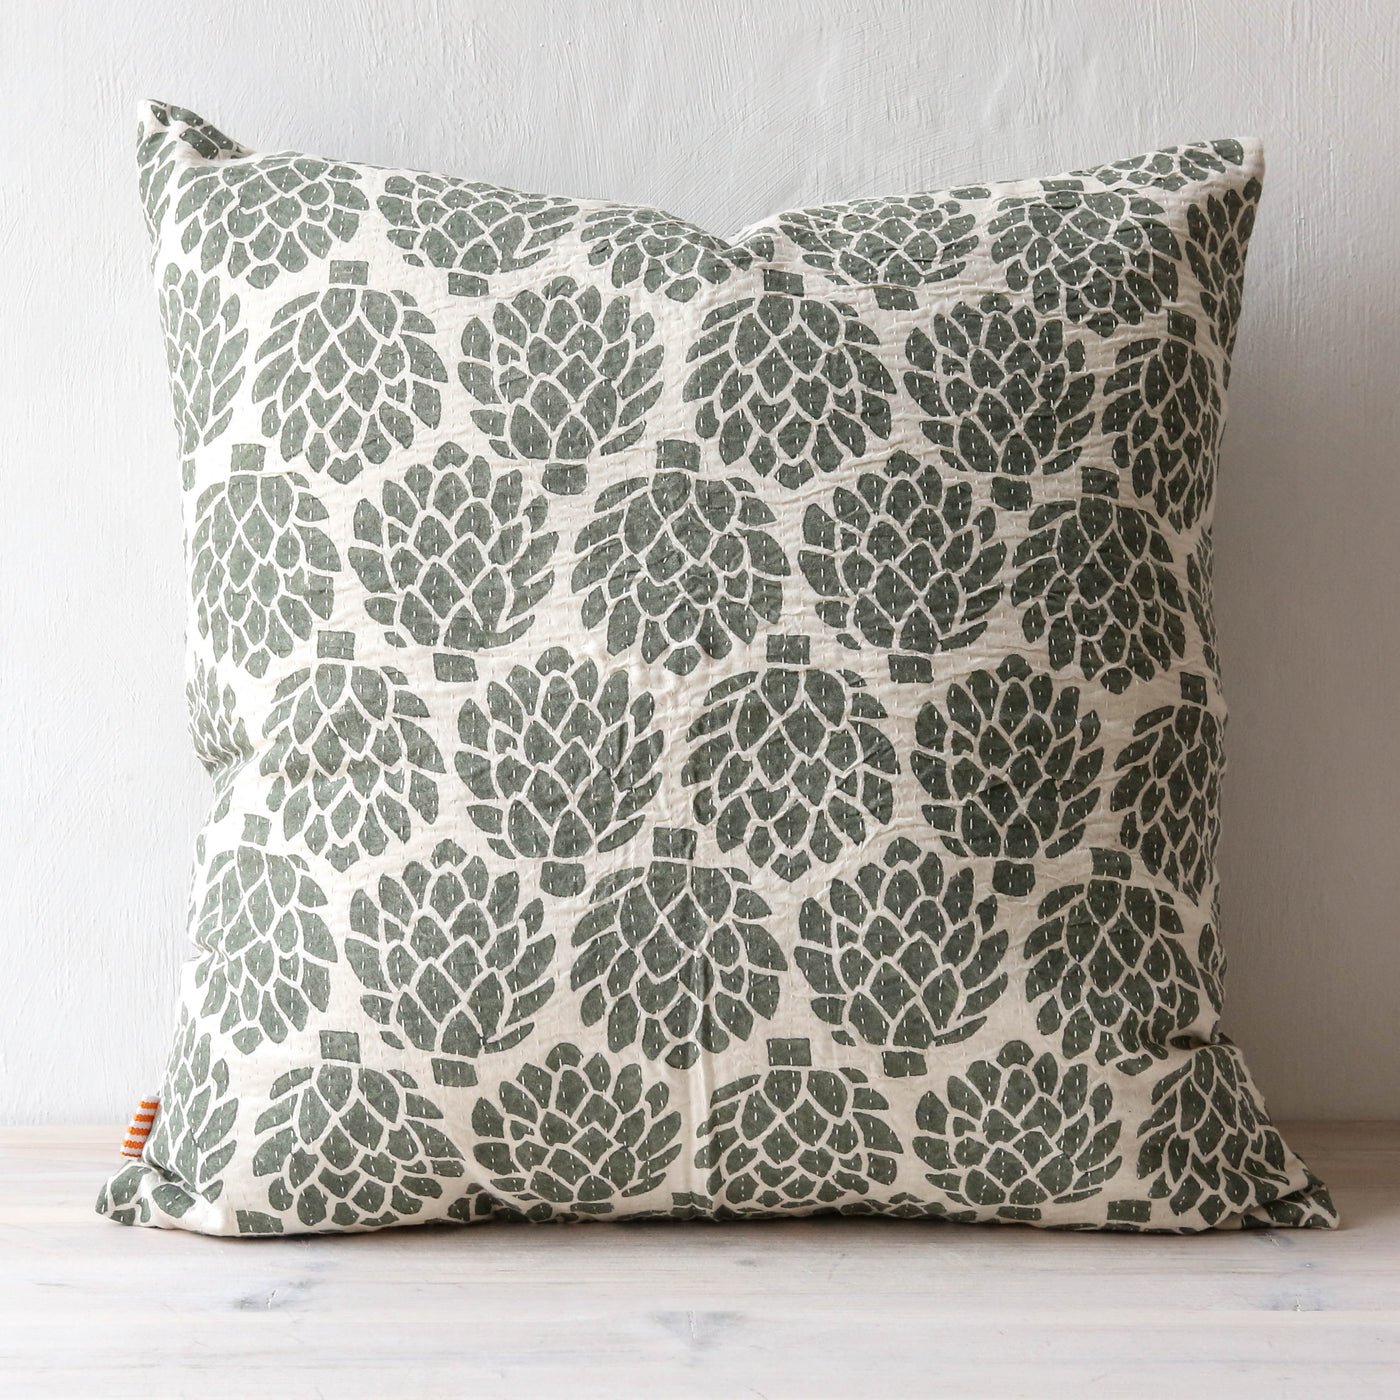 Cotton Cushion Cover - Artichoke Grey Green